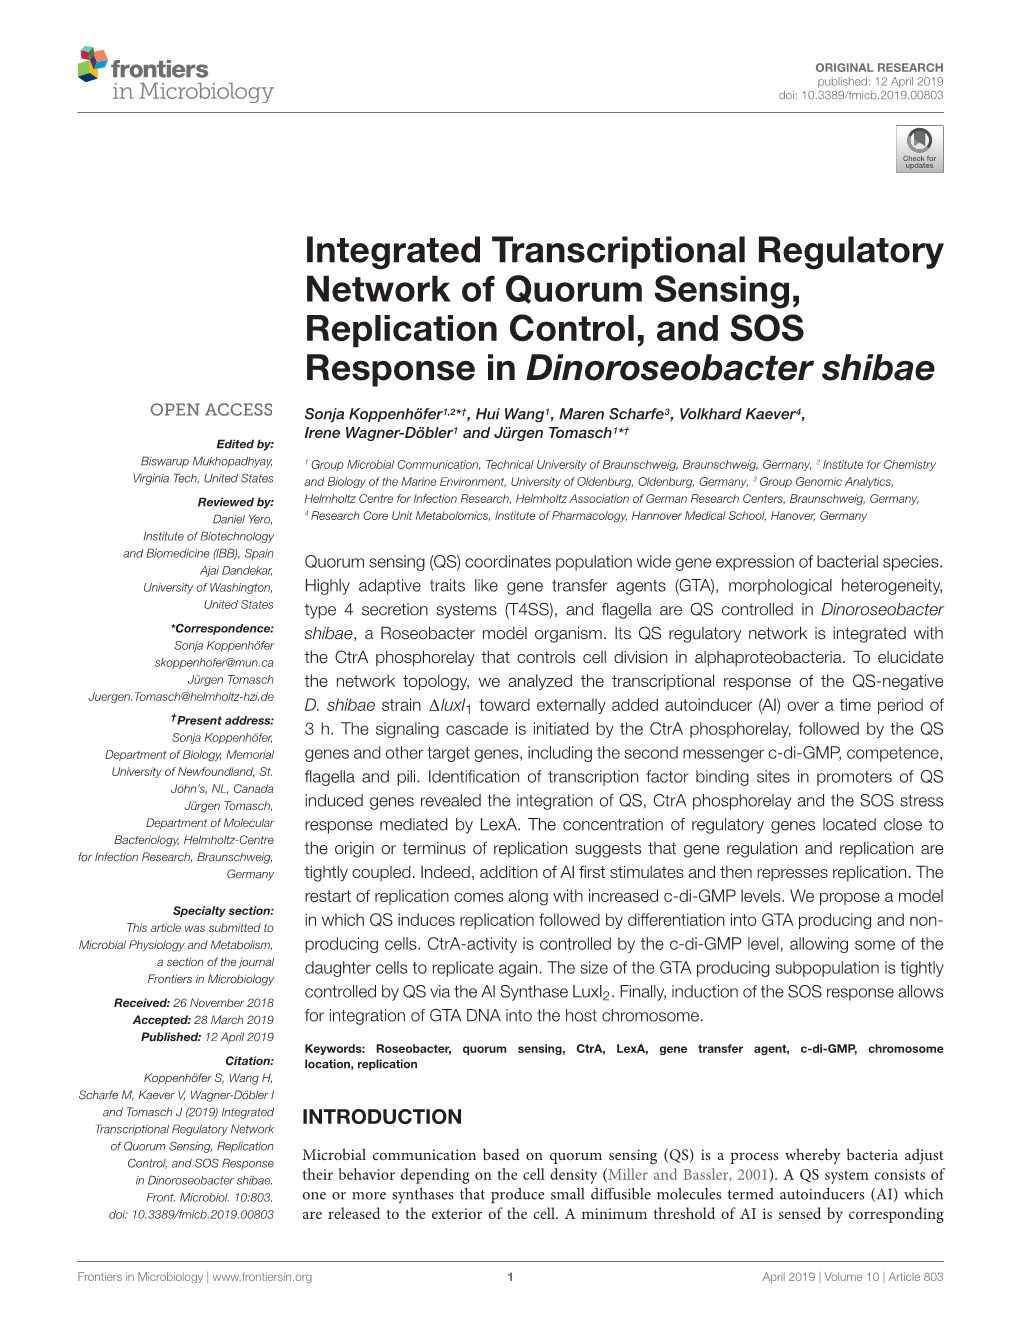 Integrated Transcriptional Regulatory Network of Quorum Sensing, Replication Control, and SOS Response in Dinoroseobacter Shibae